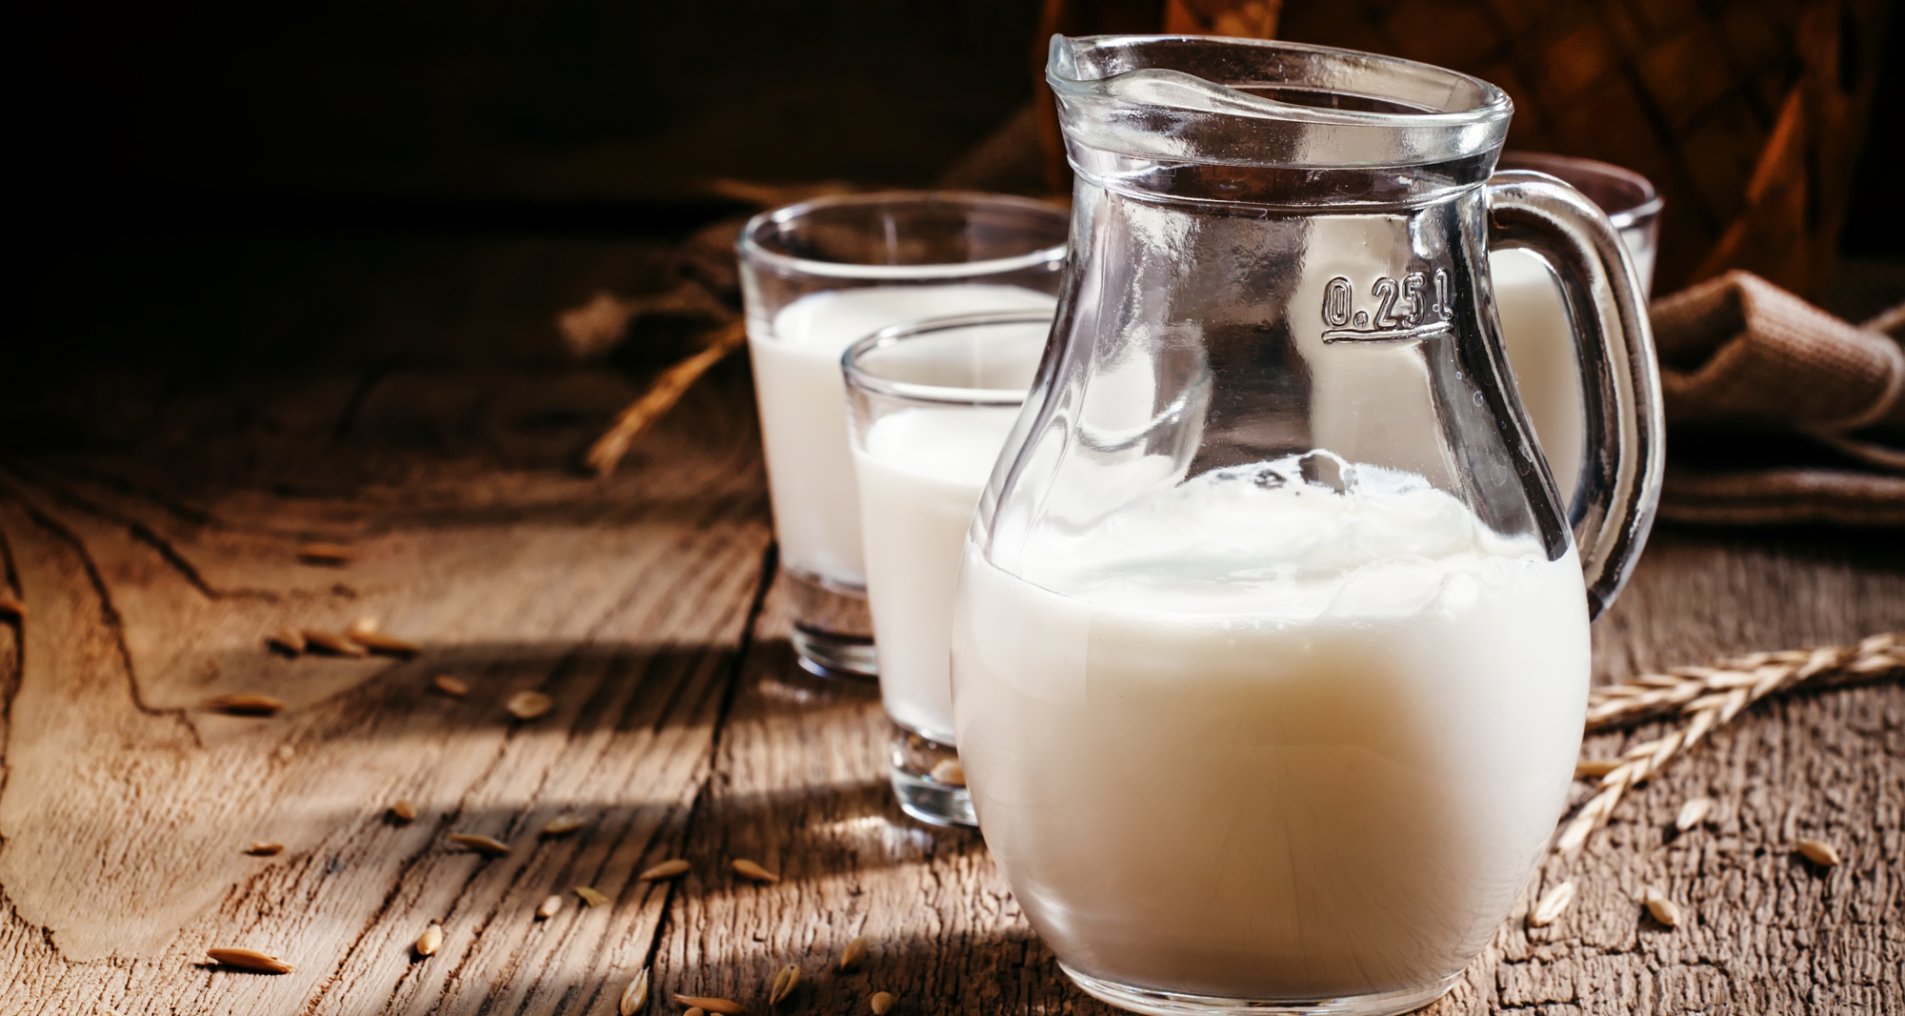 Как сделать кефир в домашних условиях из домашнего молока | Good Food